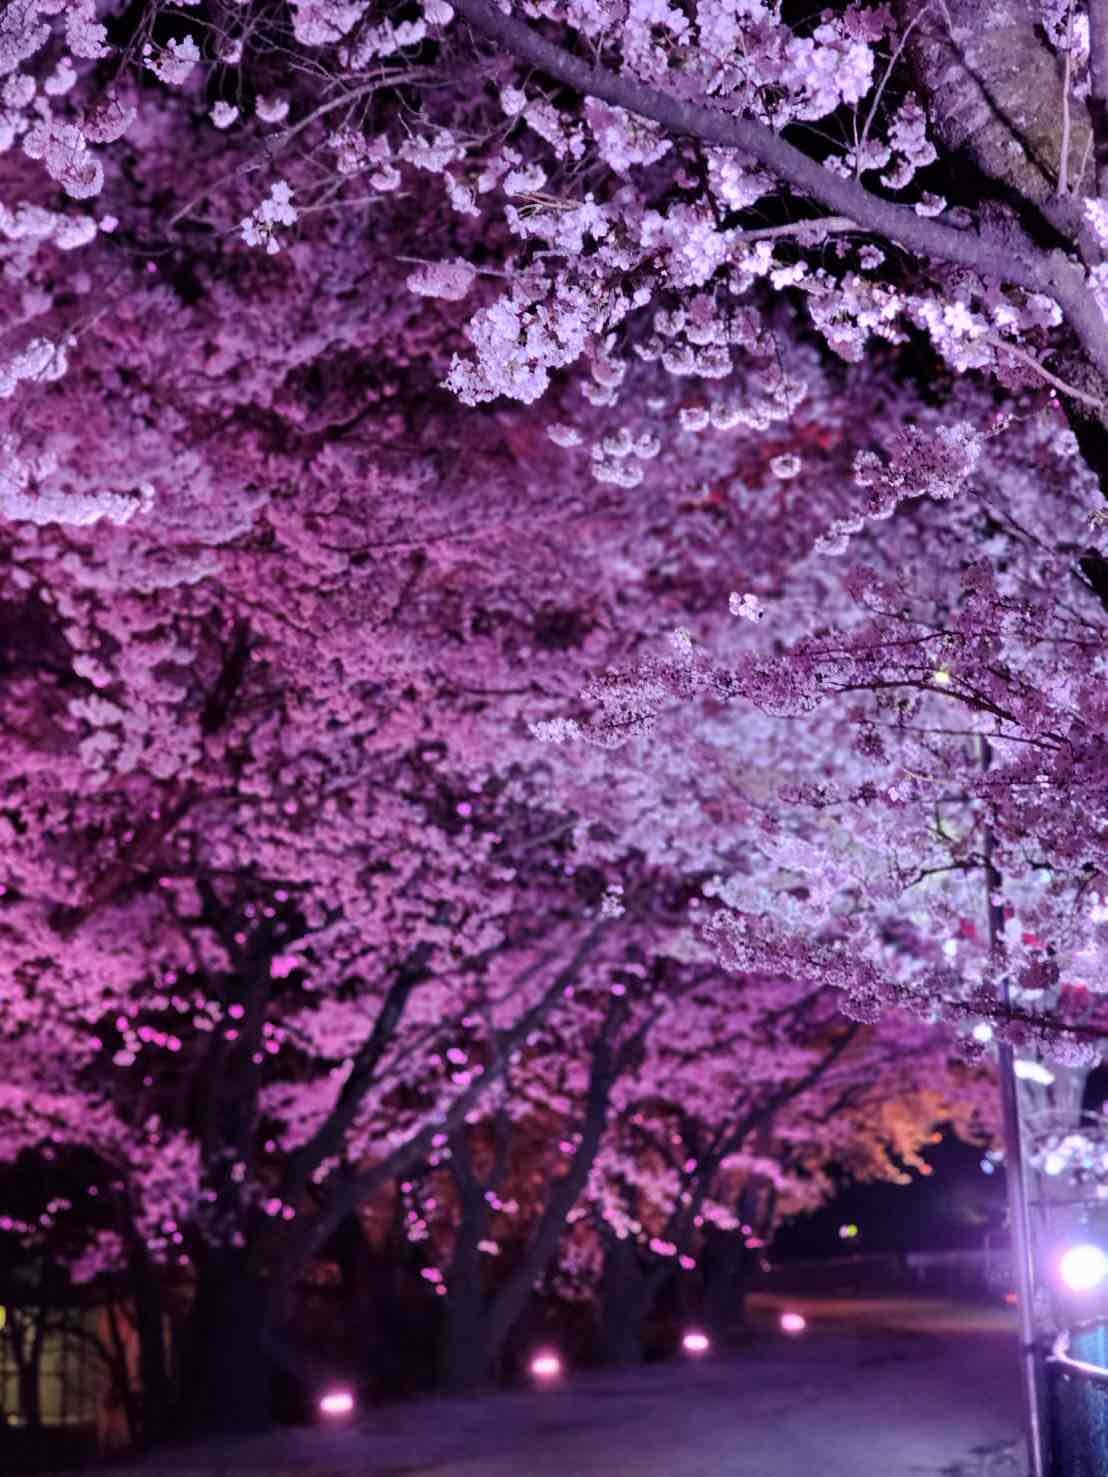 徳島堰沿いの桜並木